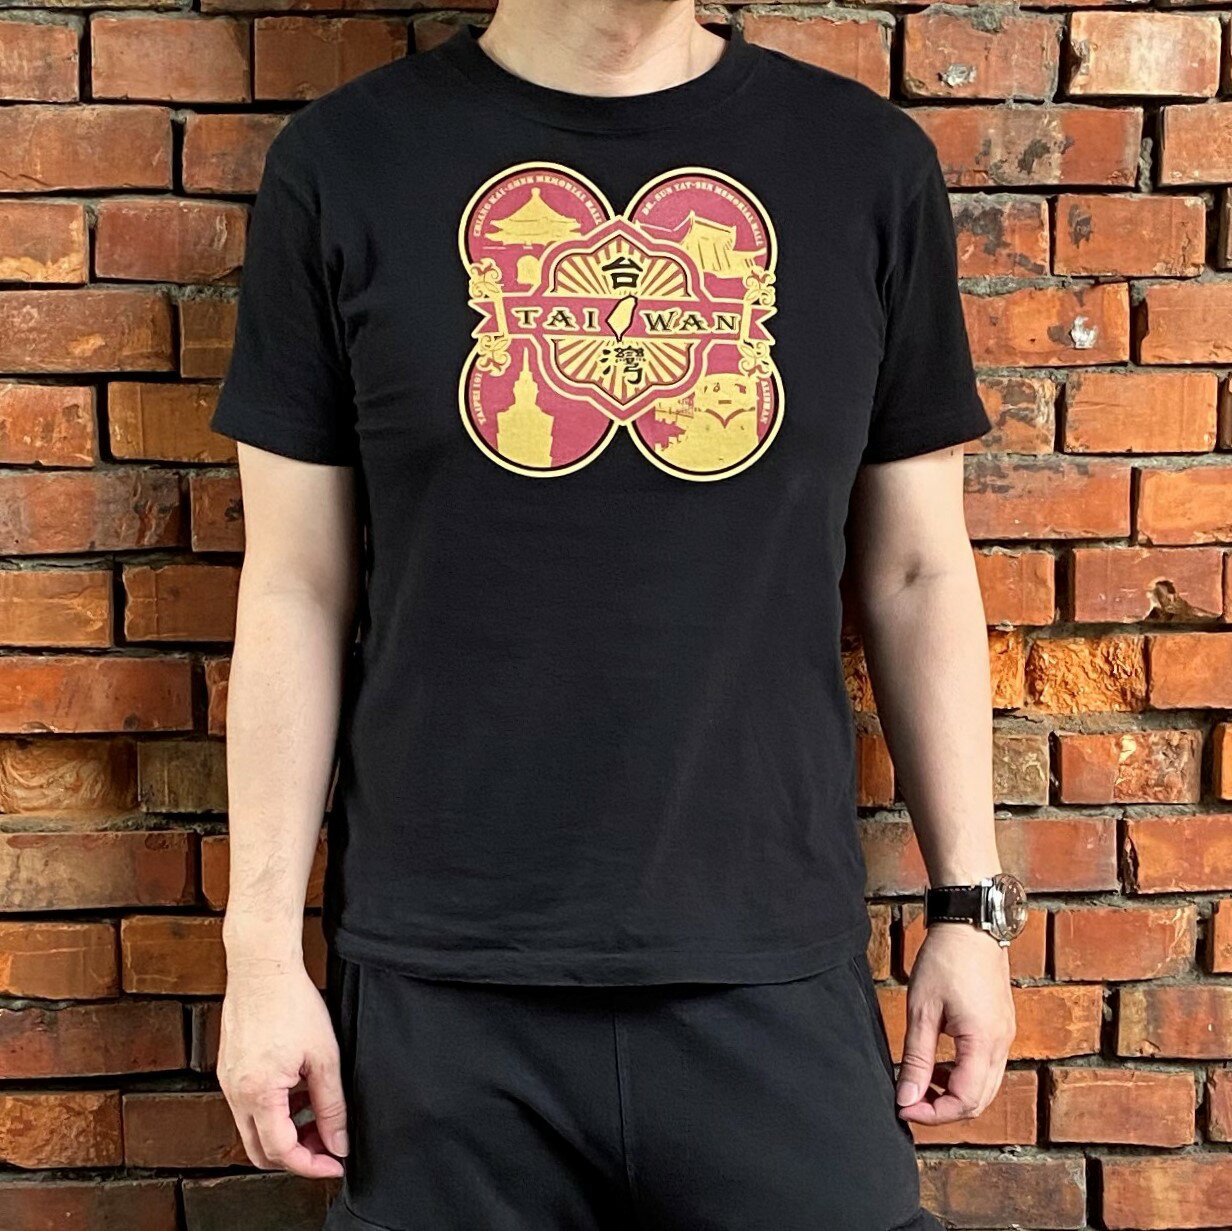 【仲夏周年慶】MILU台灣故事T-Shirt / 台灣風味 短袖T恤 / 純棉 台灣製Taiwan